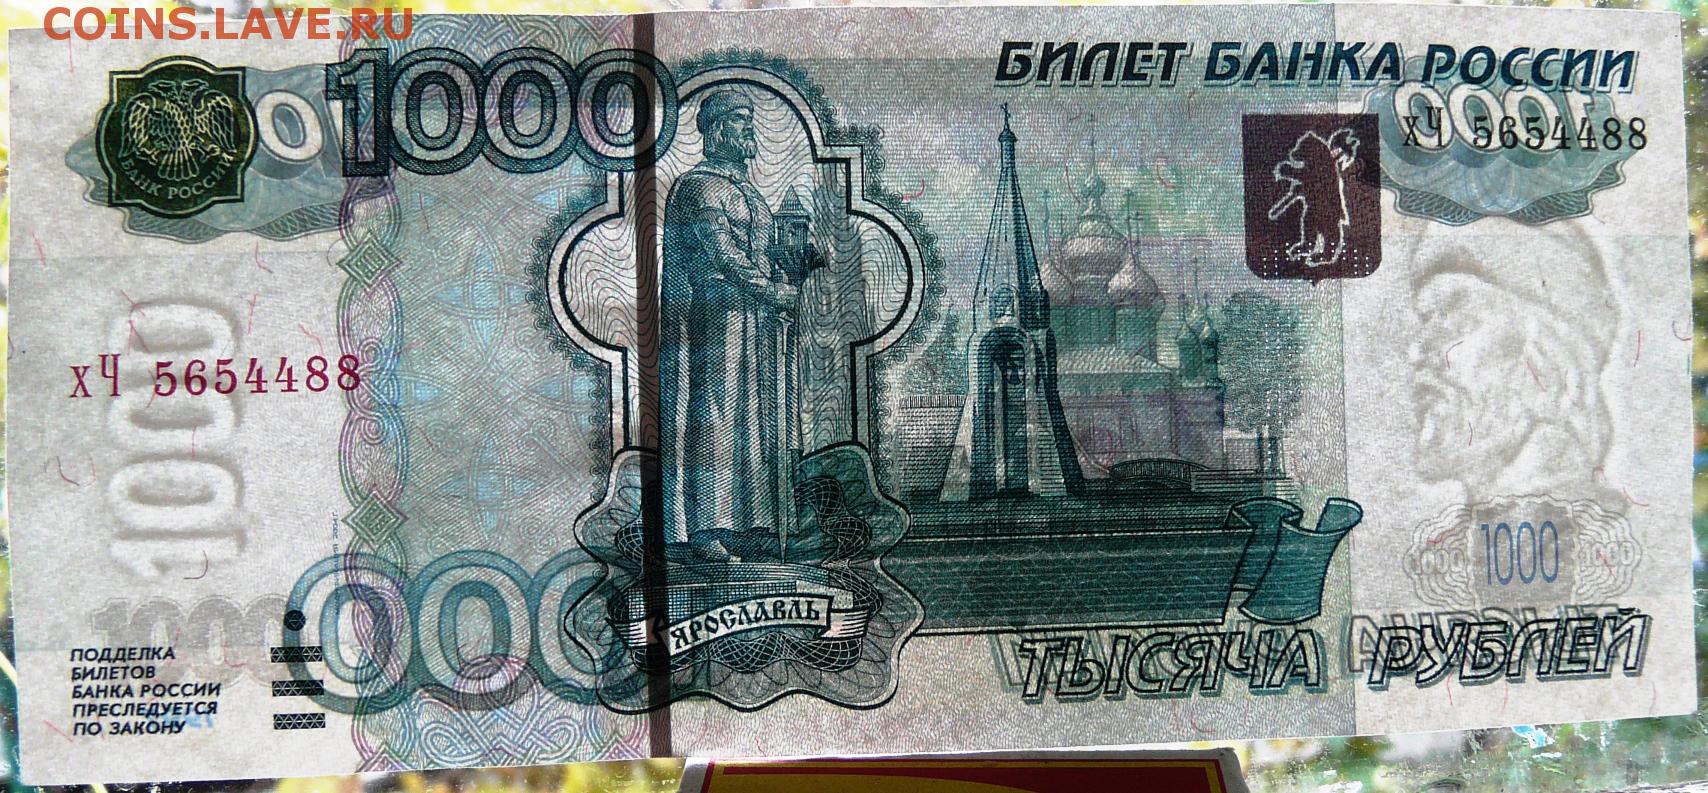 1000 рублей 2004. Тысяча рублей 2004 года. 1000 Руб 2004 года. 1000 Рублей образца 2004 года. 1000 Тысяча в 2004 году.